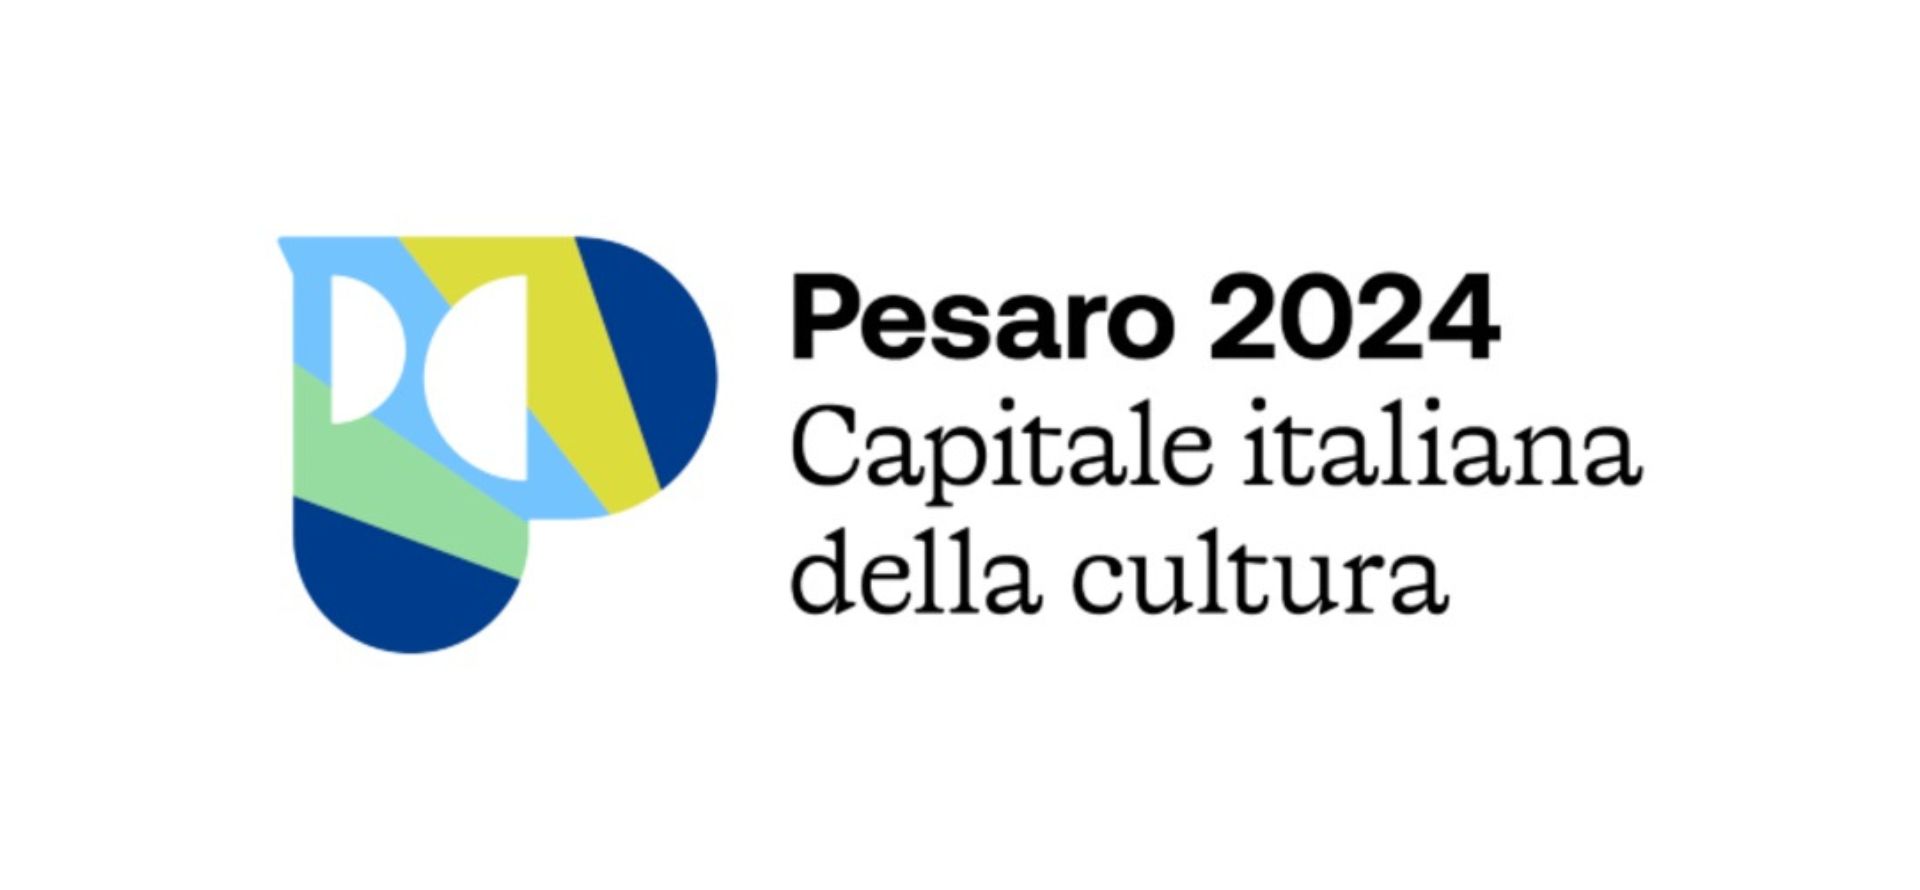 La Natura della Cultura fiorisce a Pesaro 2024